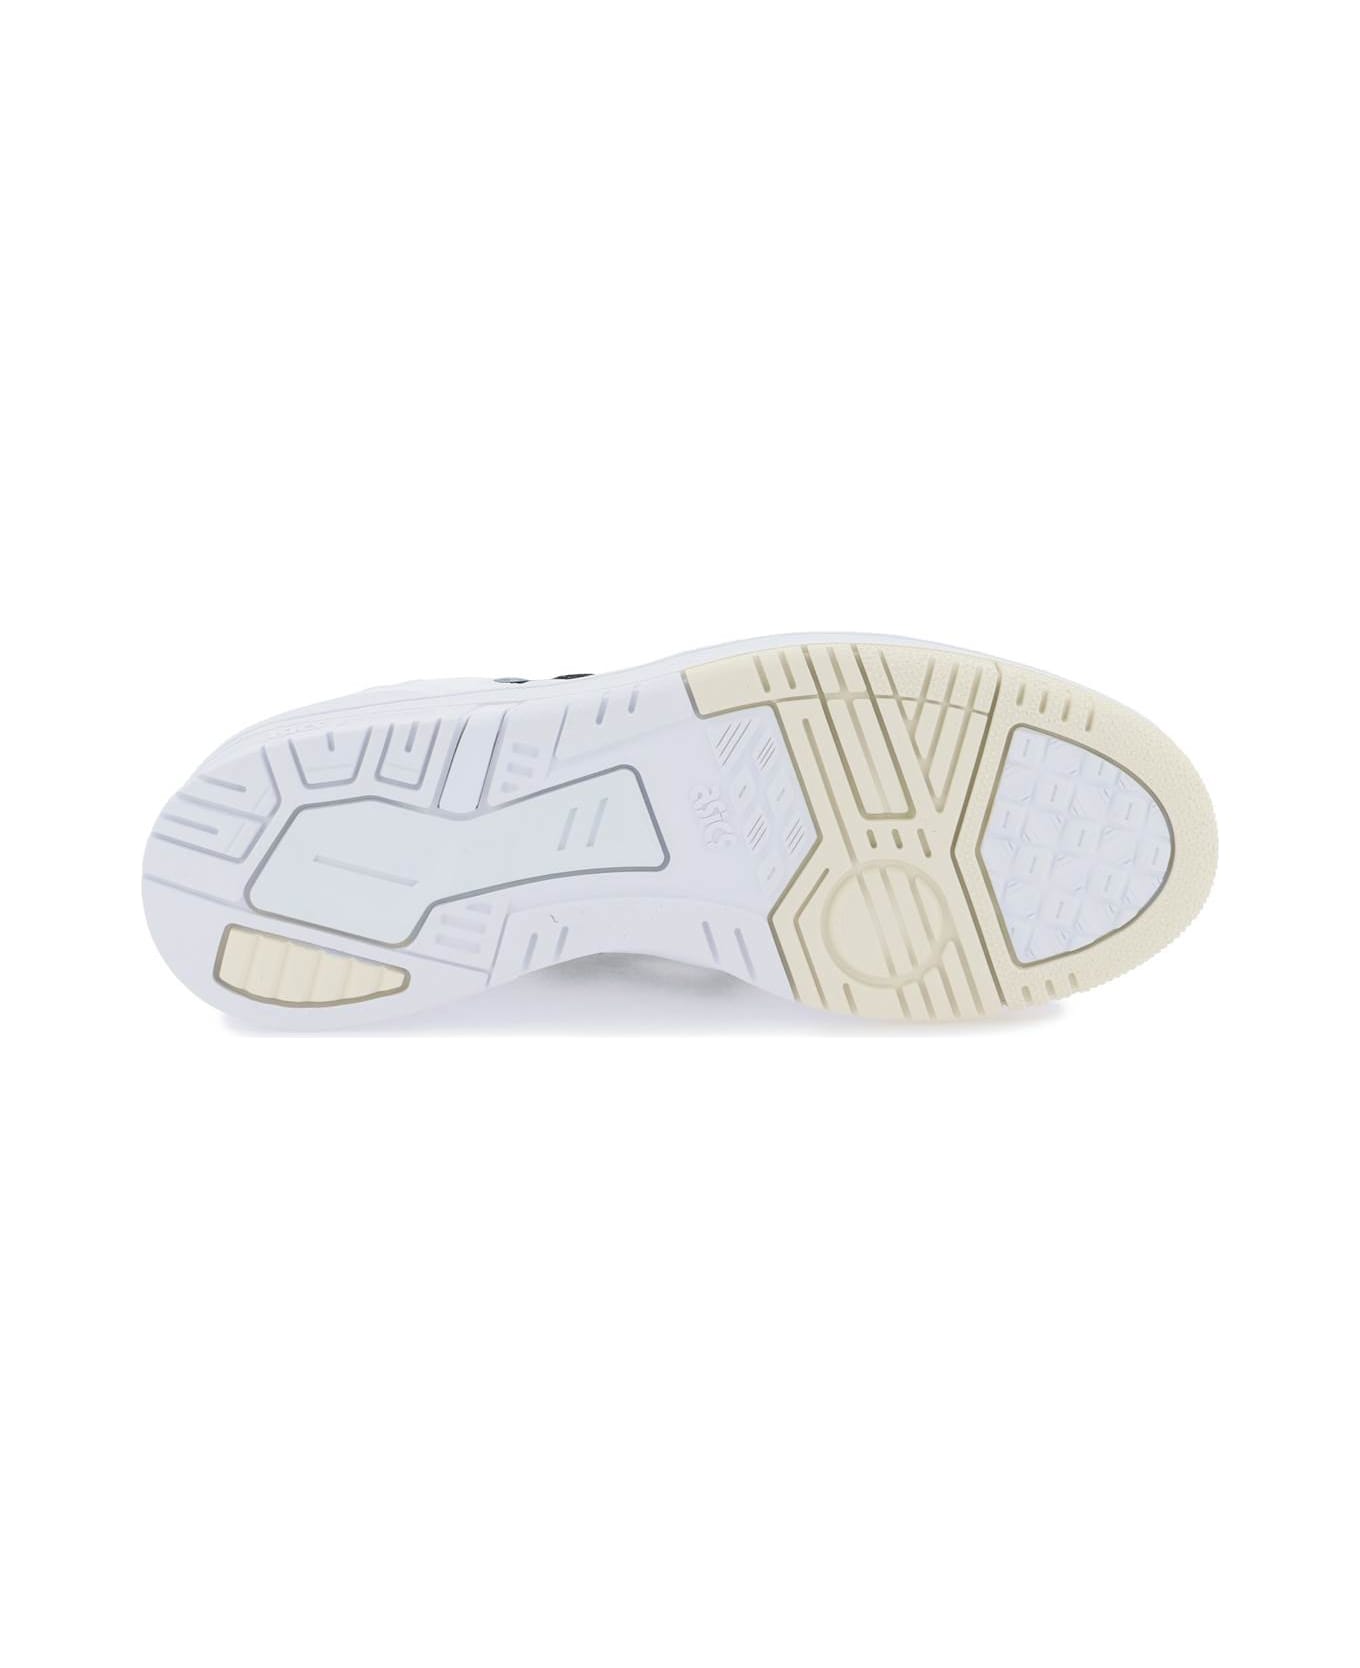 Asics Ex89 Sneakers - WHITE SHAMROCK GREEN (White)